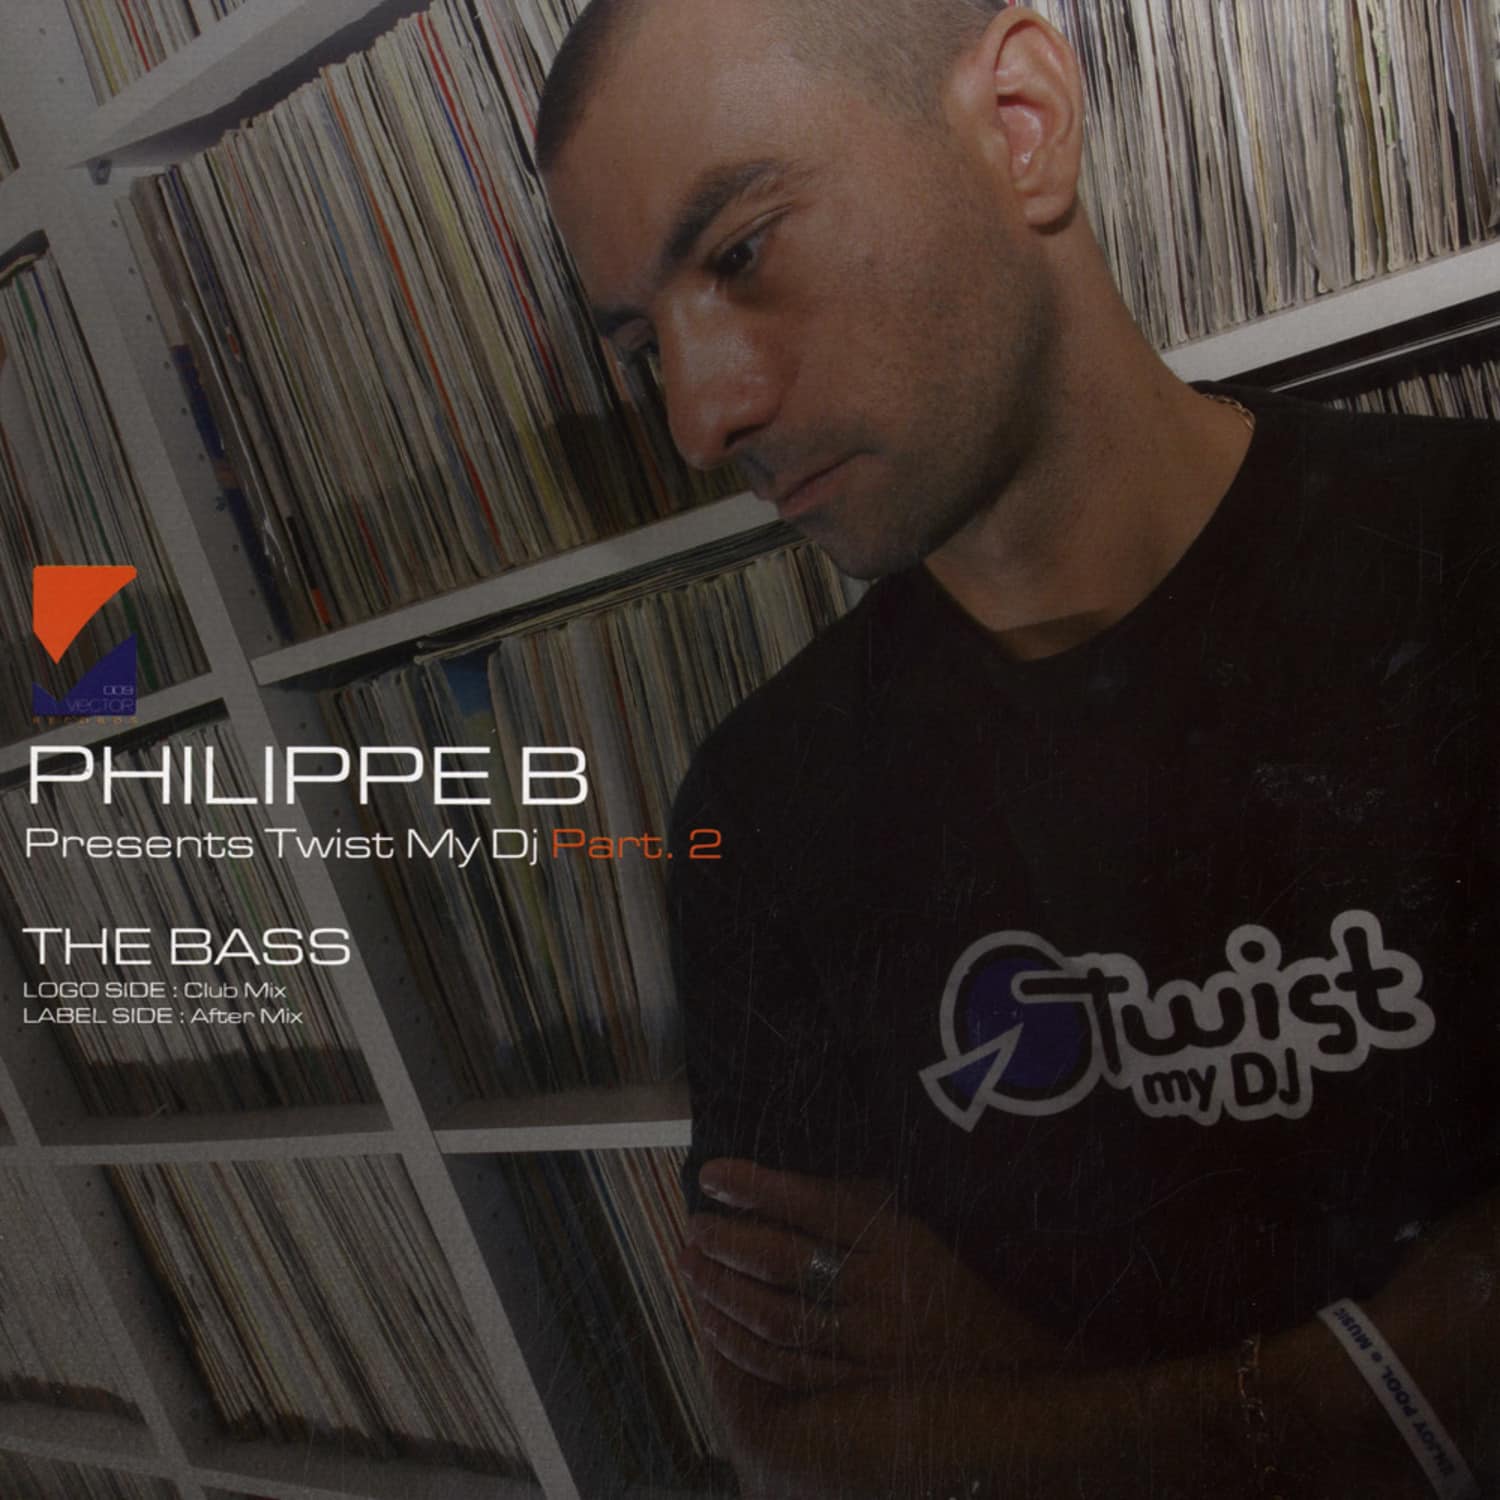 Philippe B - TWIST MY DJ PART 2 / THE BASS